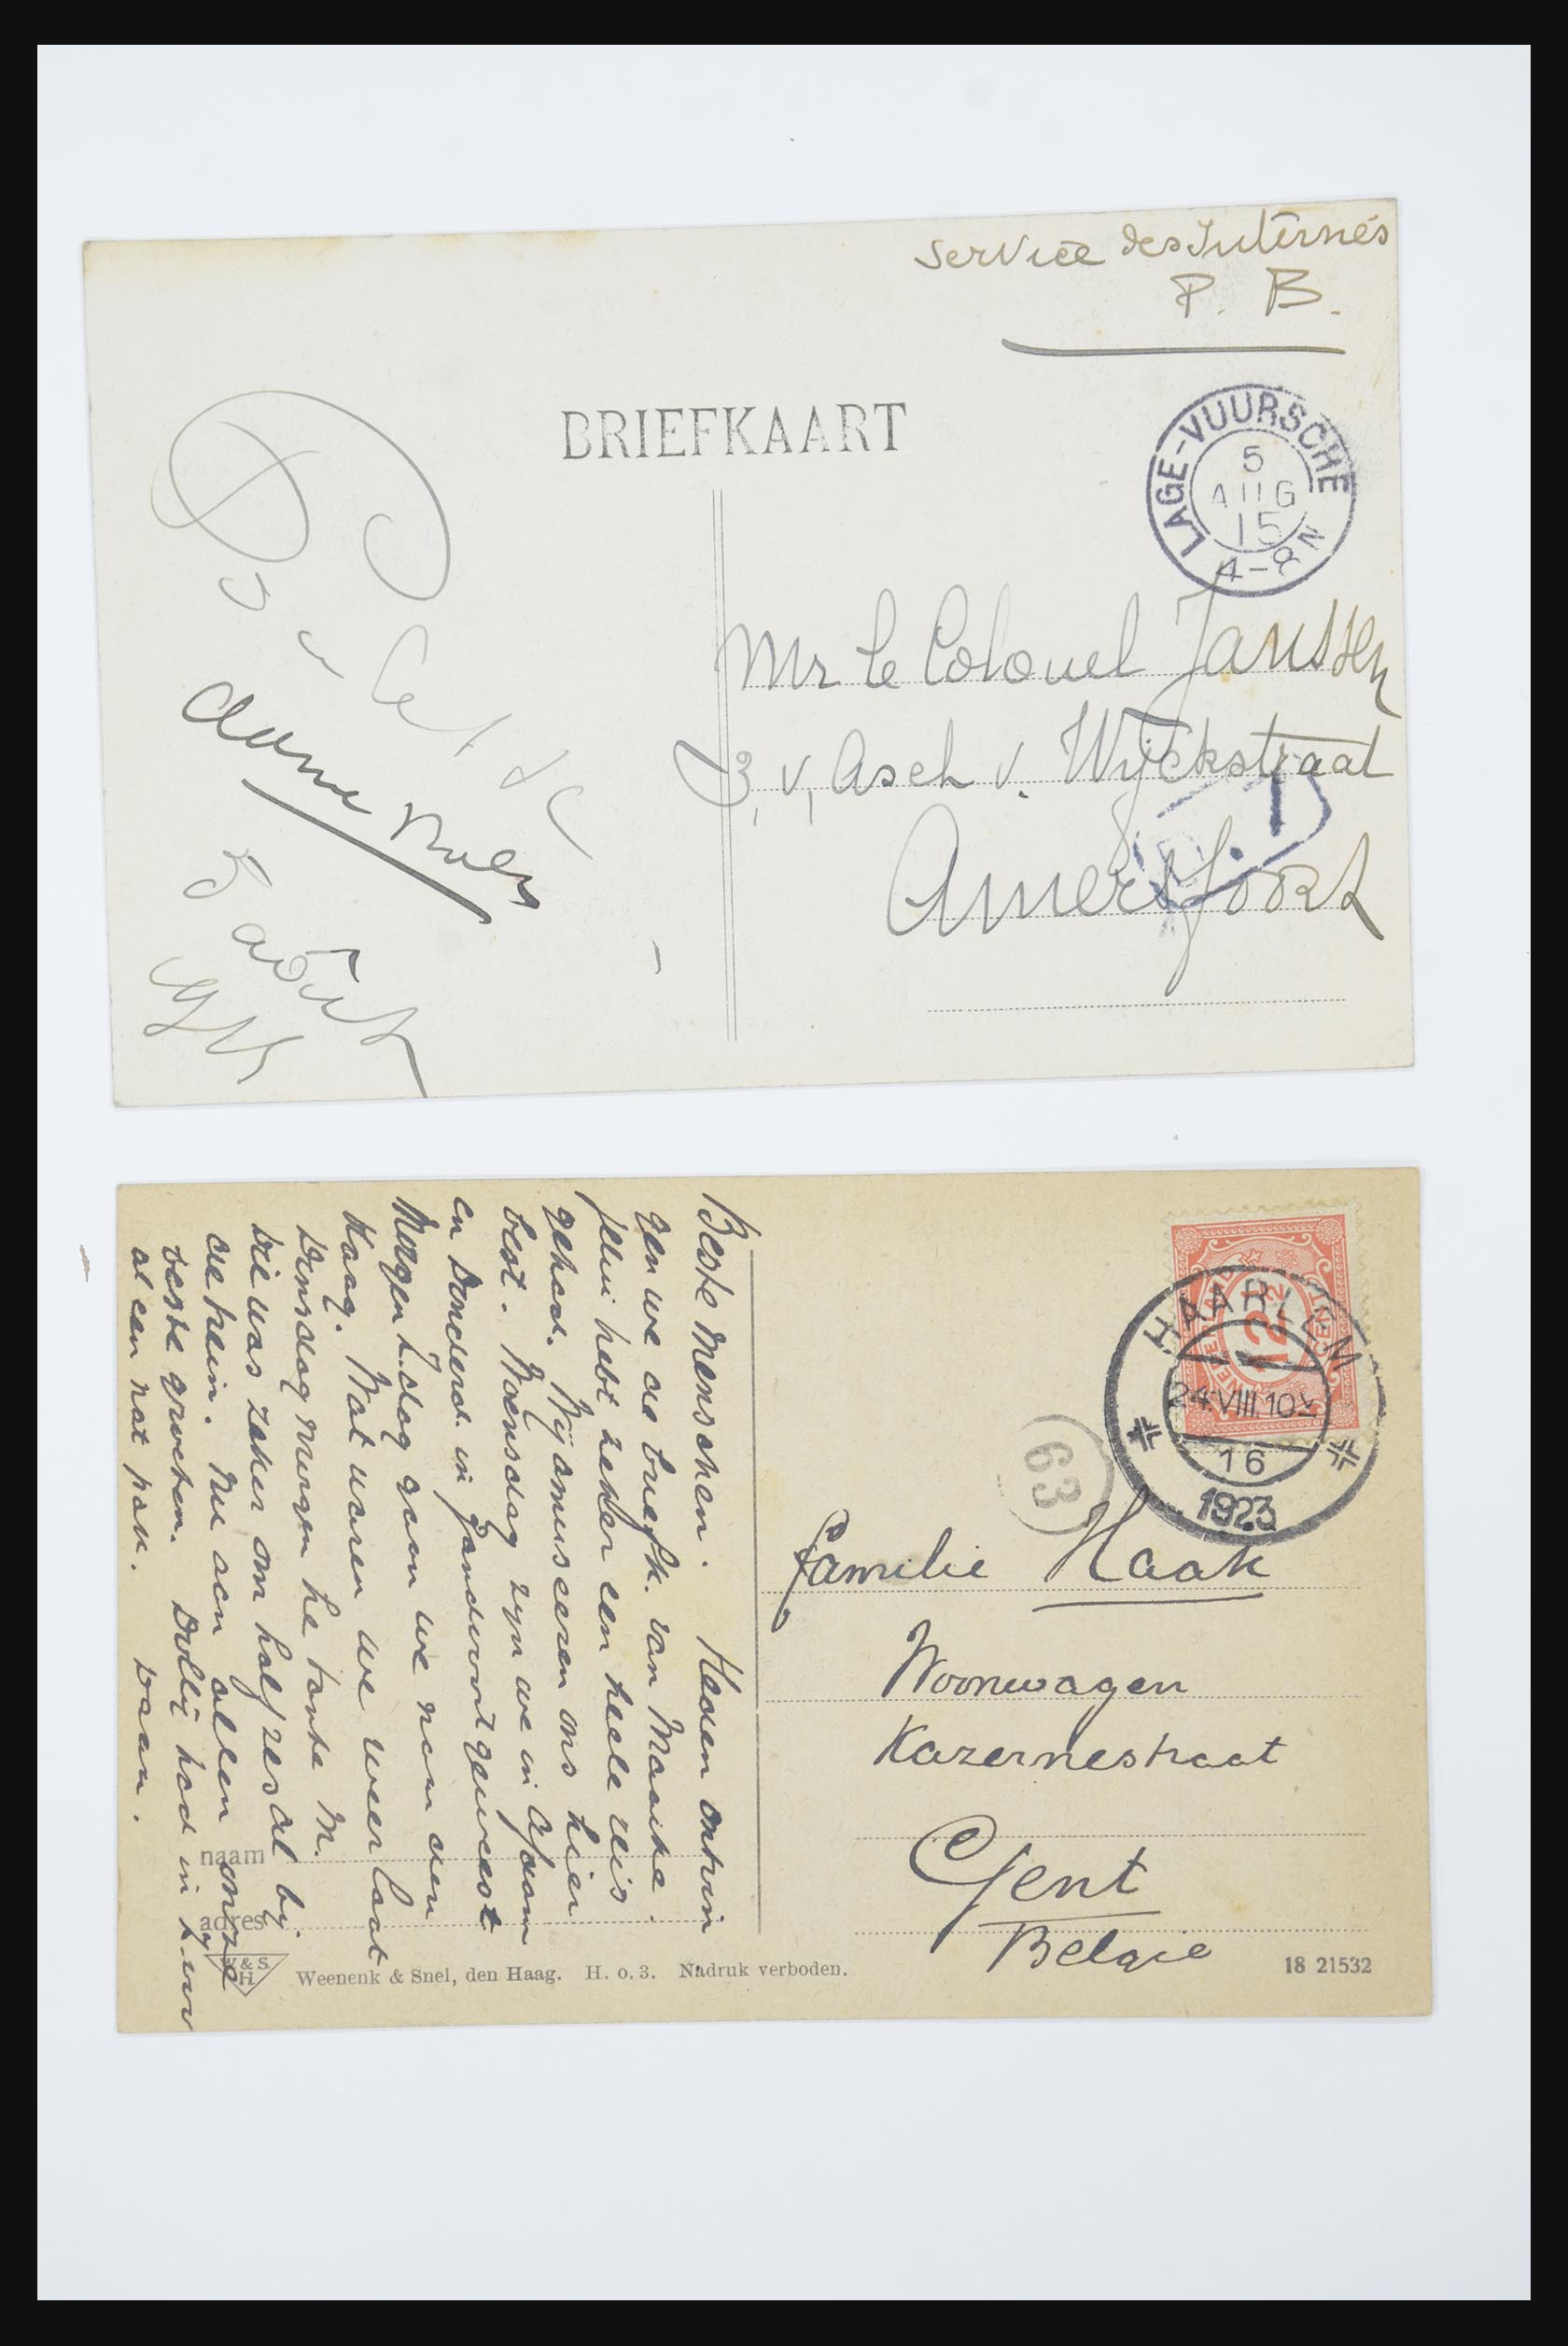 31668 049 - 31668 Nederland ansichtkaarten 1905-1935.